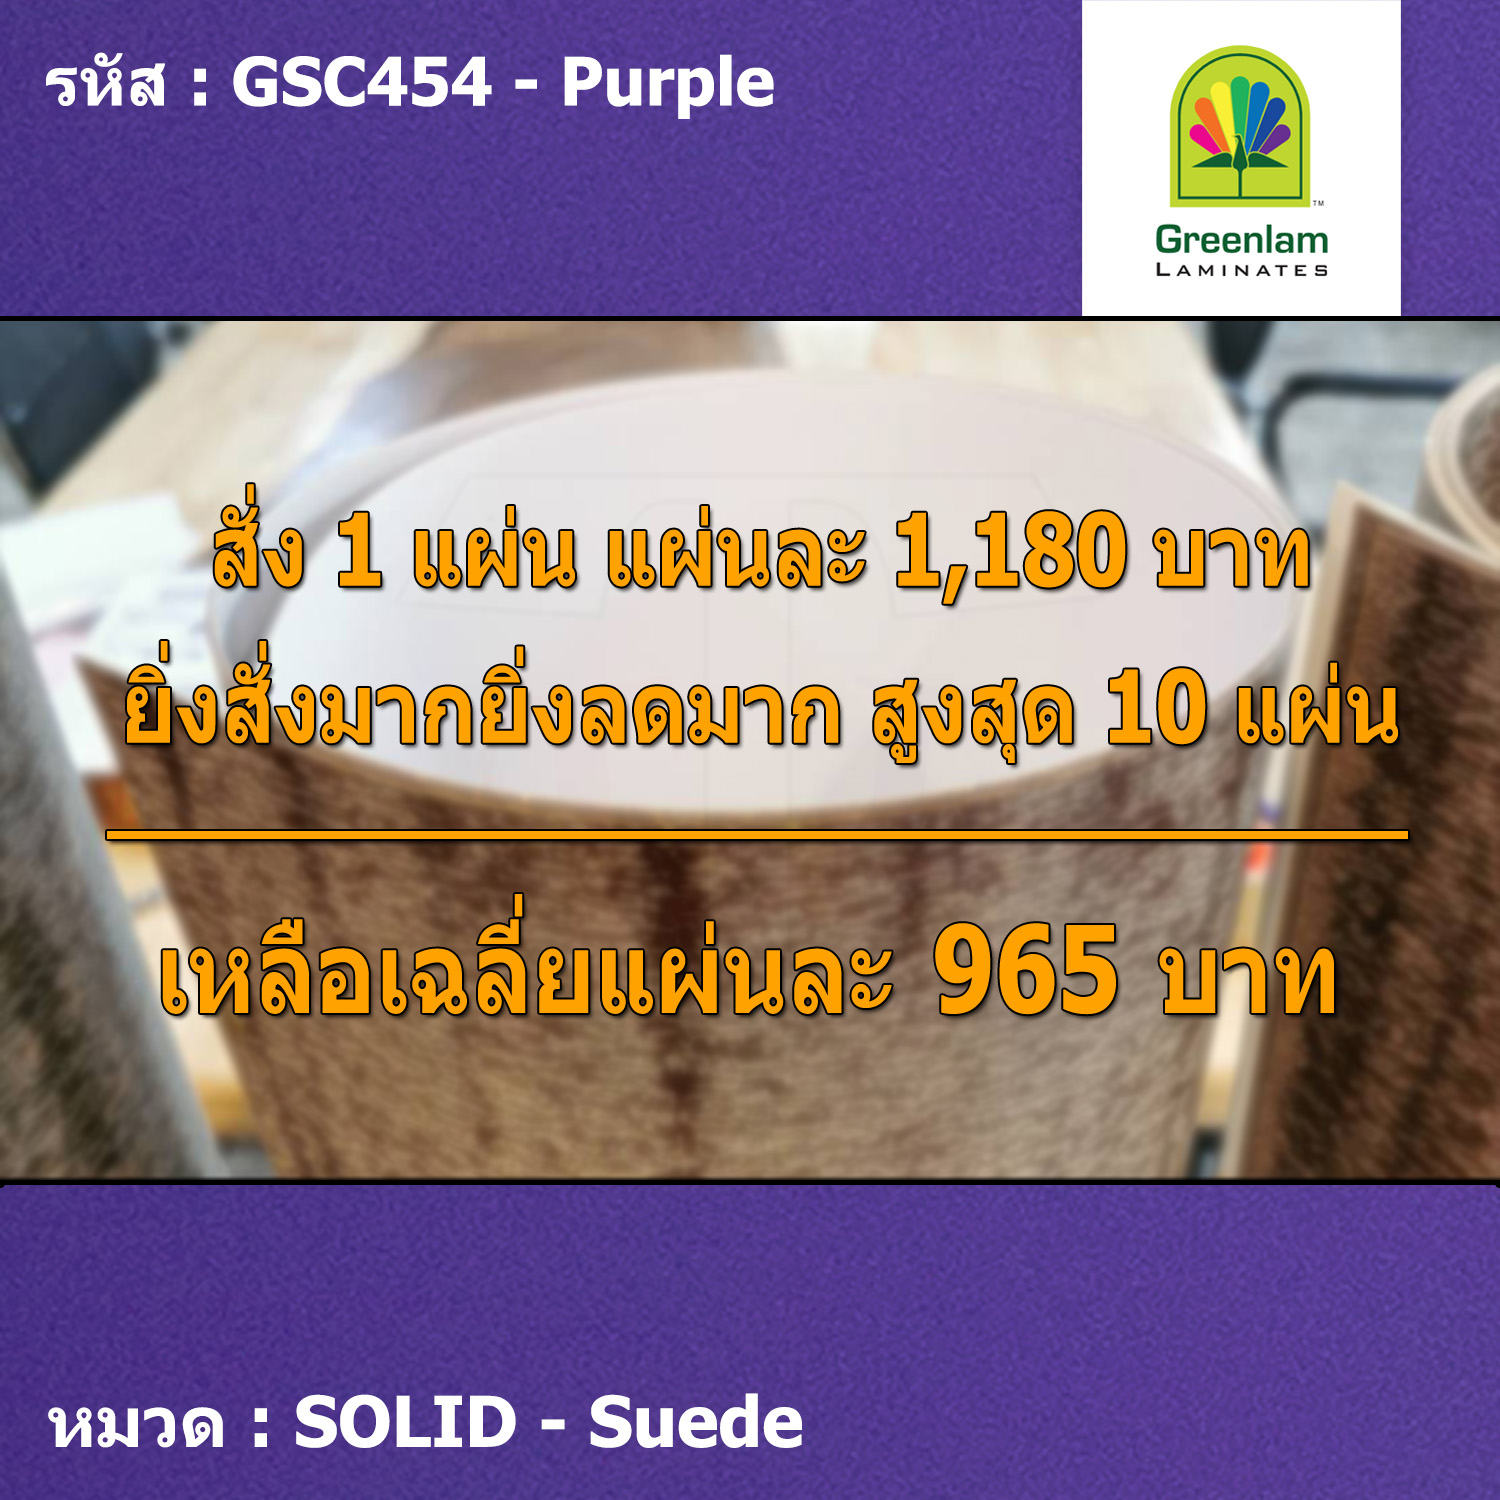 แผ่นโฟเมก้า แผ่นลามิเนต ยี่ห้อ Greenlam สีม่วง รหัส GSC454 Purple พื้นผิวลาย Suede ขนาด 1220 x 2440 มม. หนา 0.80 มม. ใช้สำหรับงานตกแต่งภายใน งานปิดผิวเฟอร์น